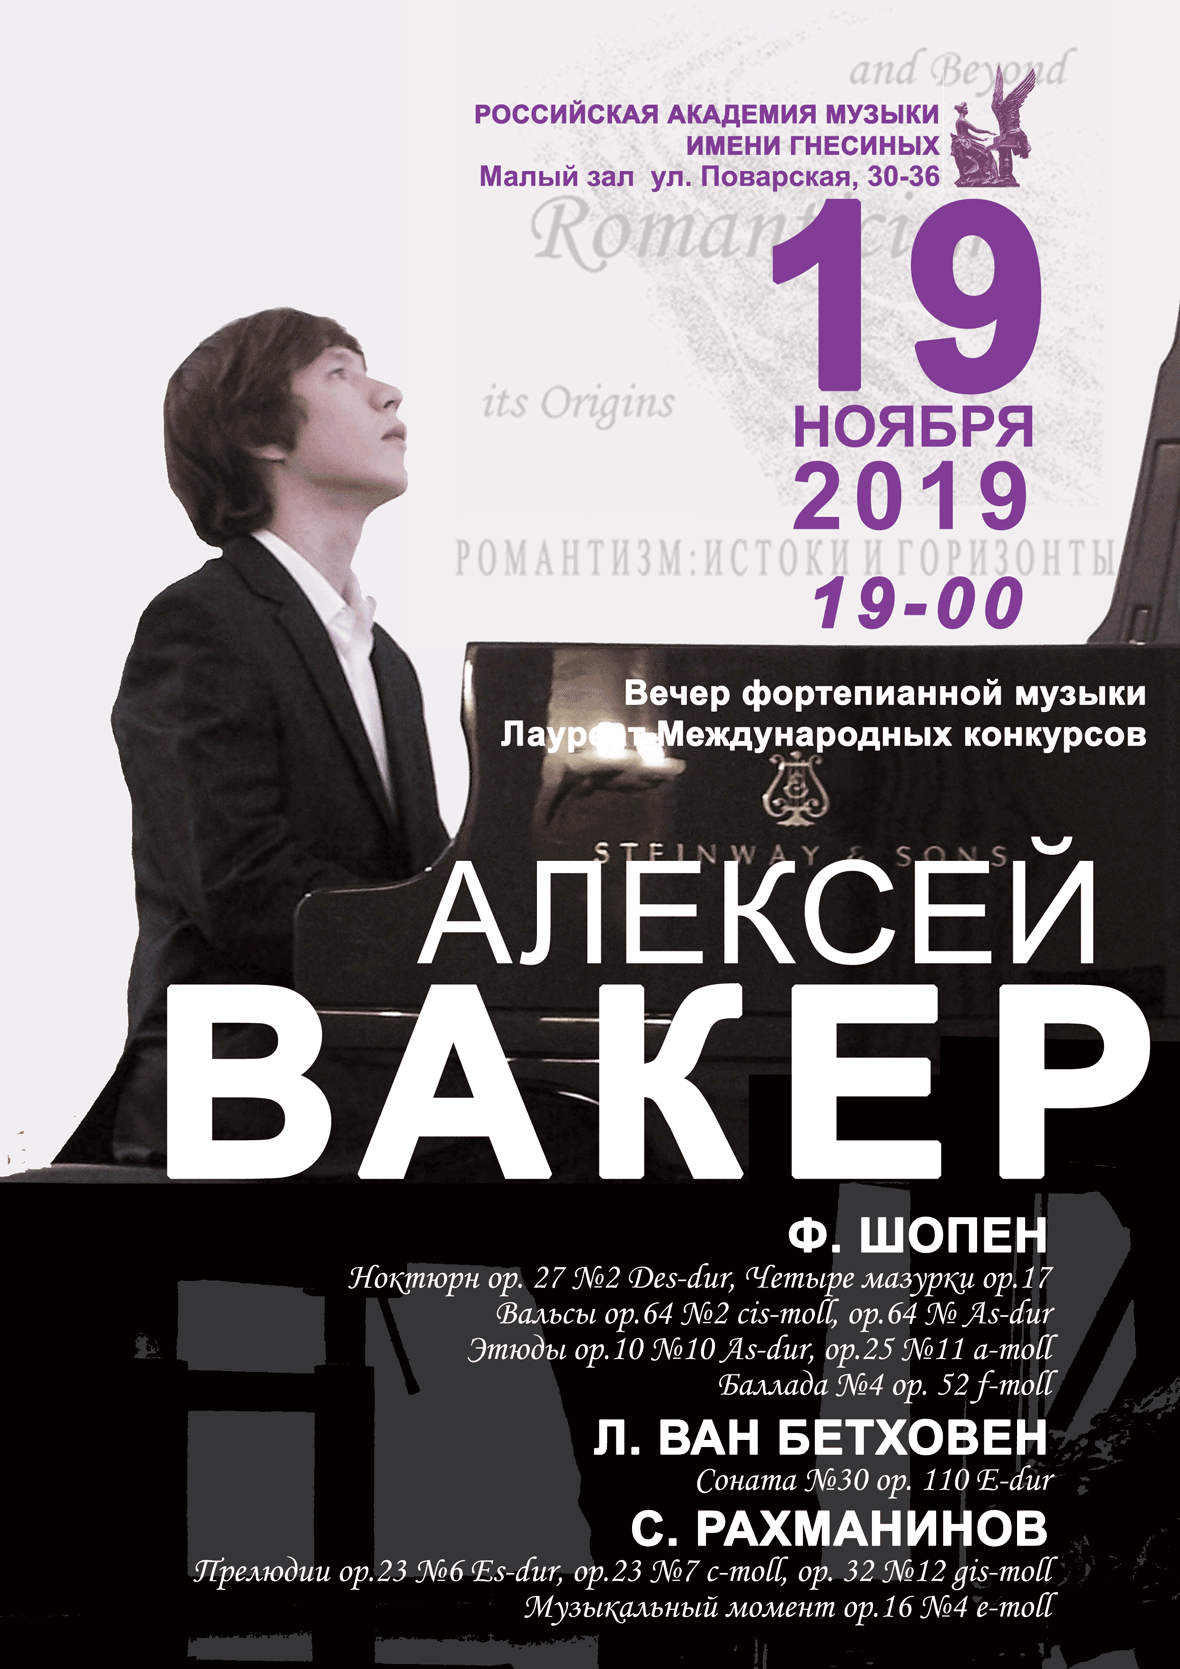 19 ноября 2019 вечер фортепианной музыки Алексей Вакер